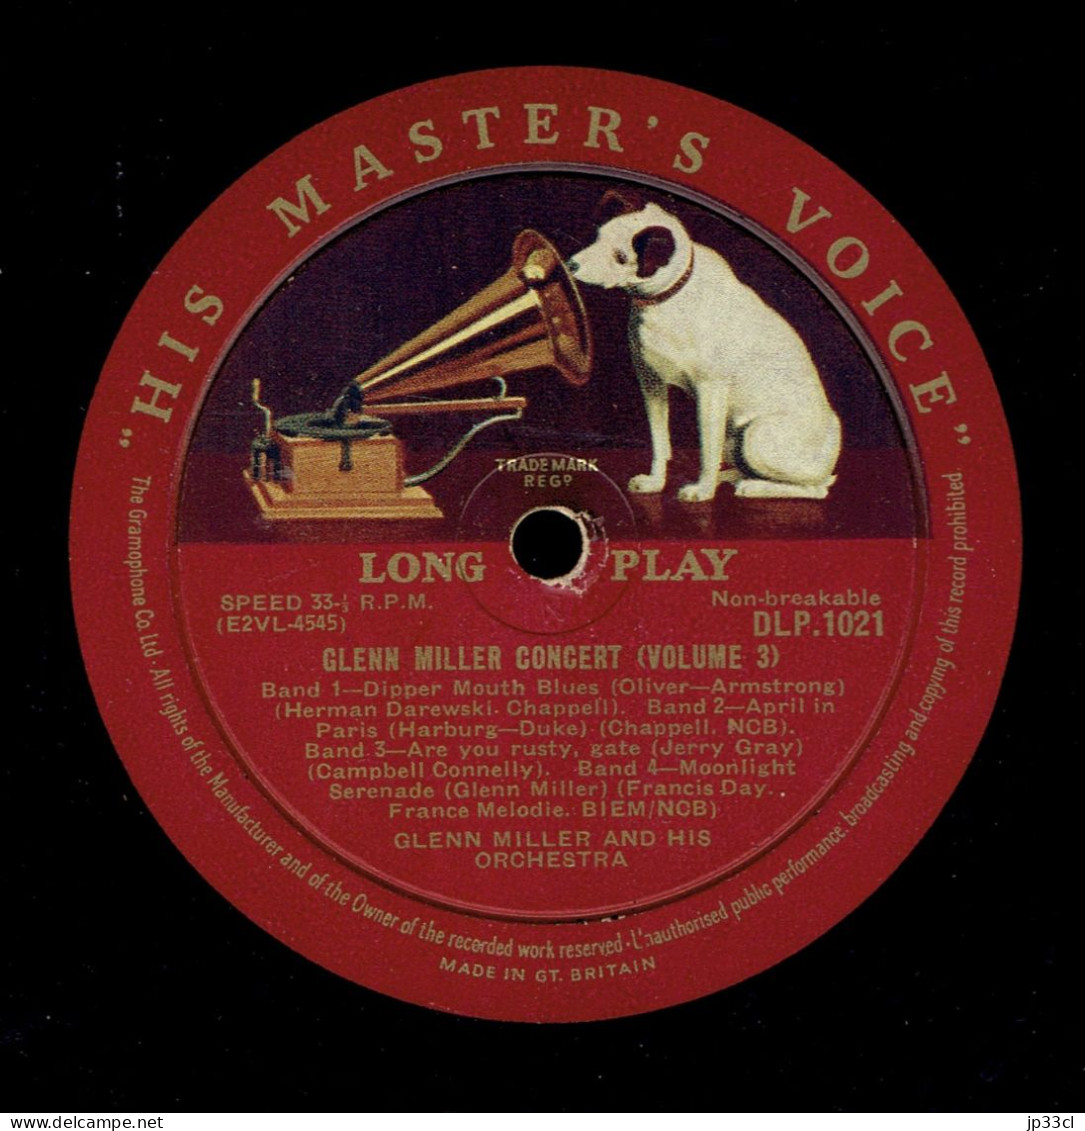 Lot de quatre 33 T : Glenn Miller Concert (Volume 1, 2 & 3) + The Glenn Miller Story (His Master's Voice, années 1950)